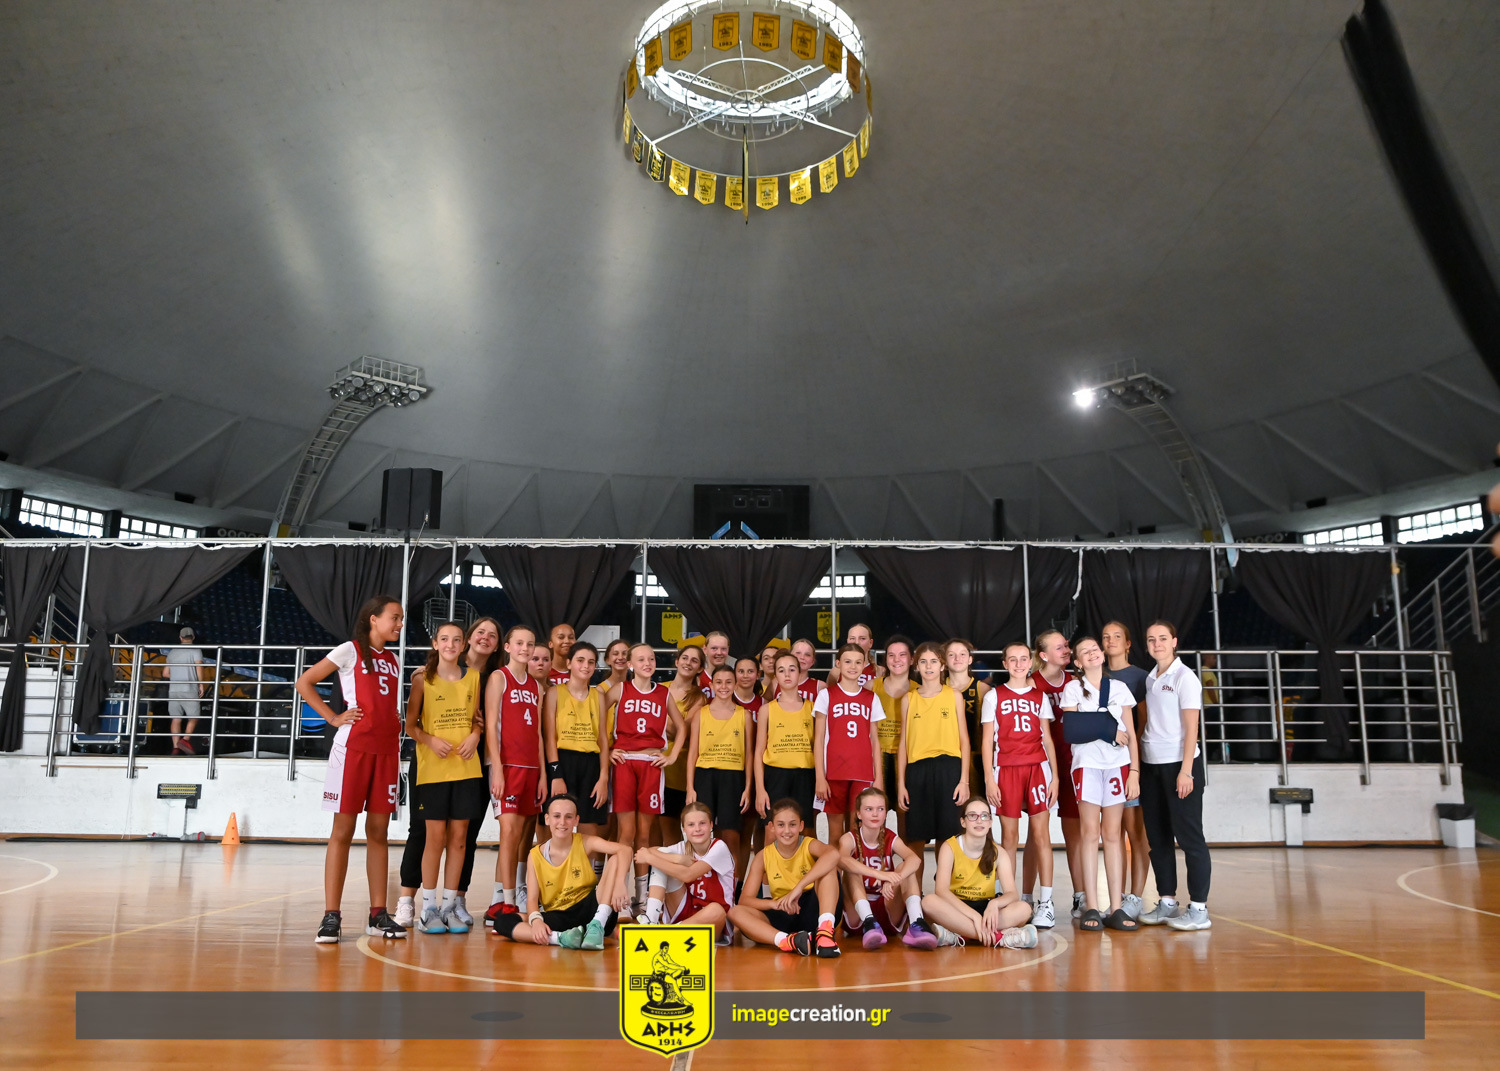 Μπάσκετ Γυναικών: Ευχάριστη εμπειρία με SISU Basketball Klub για την U14 (photostory)